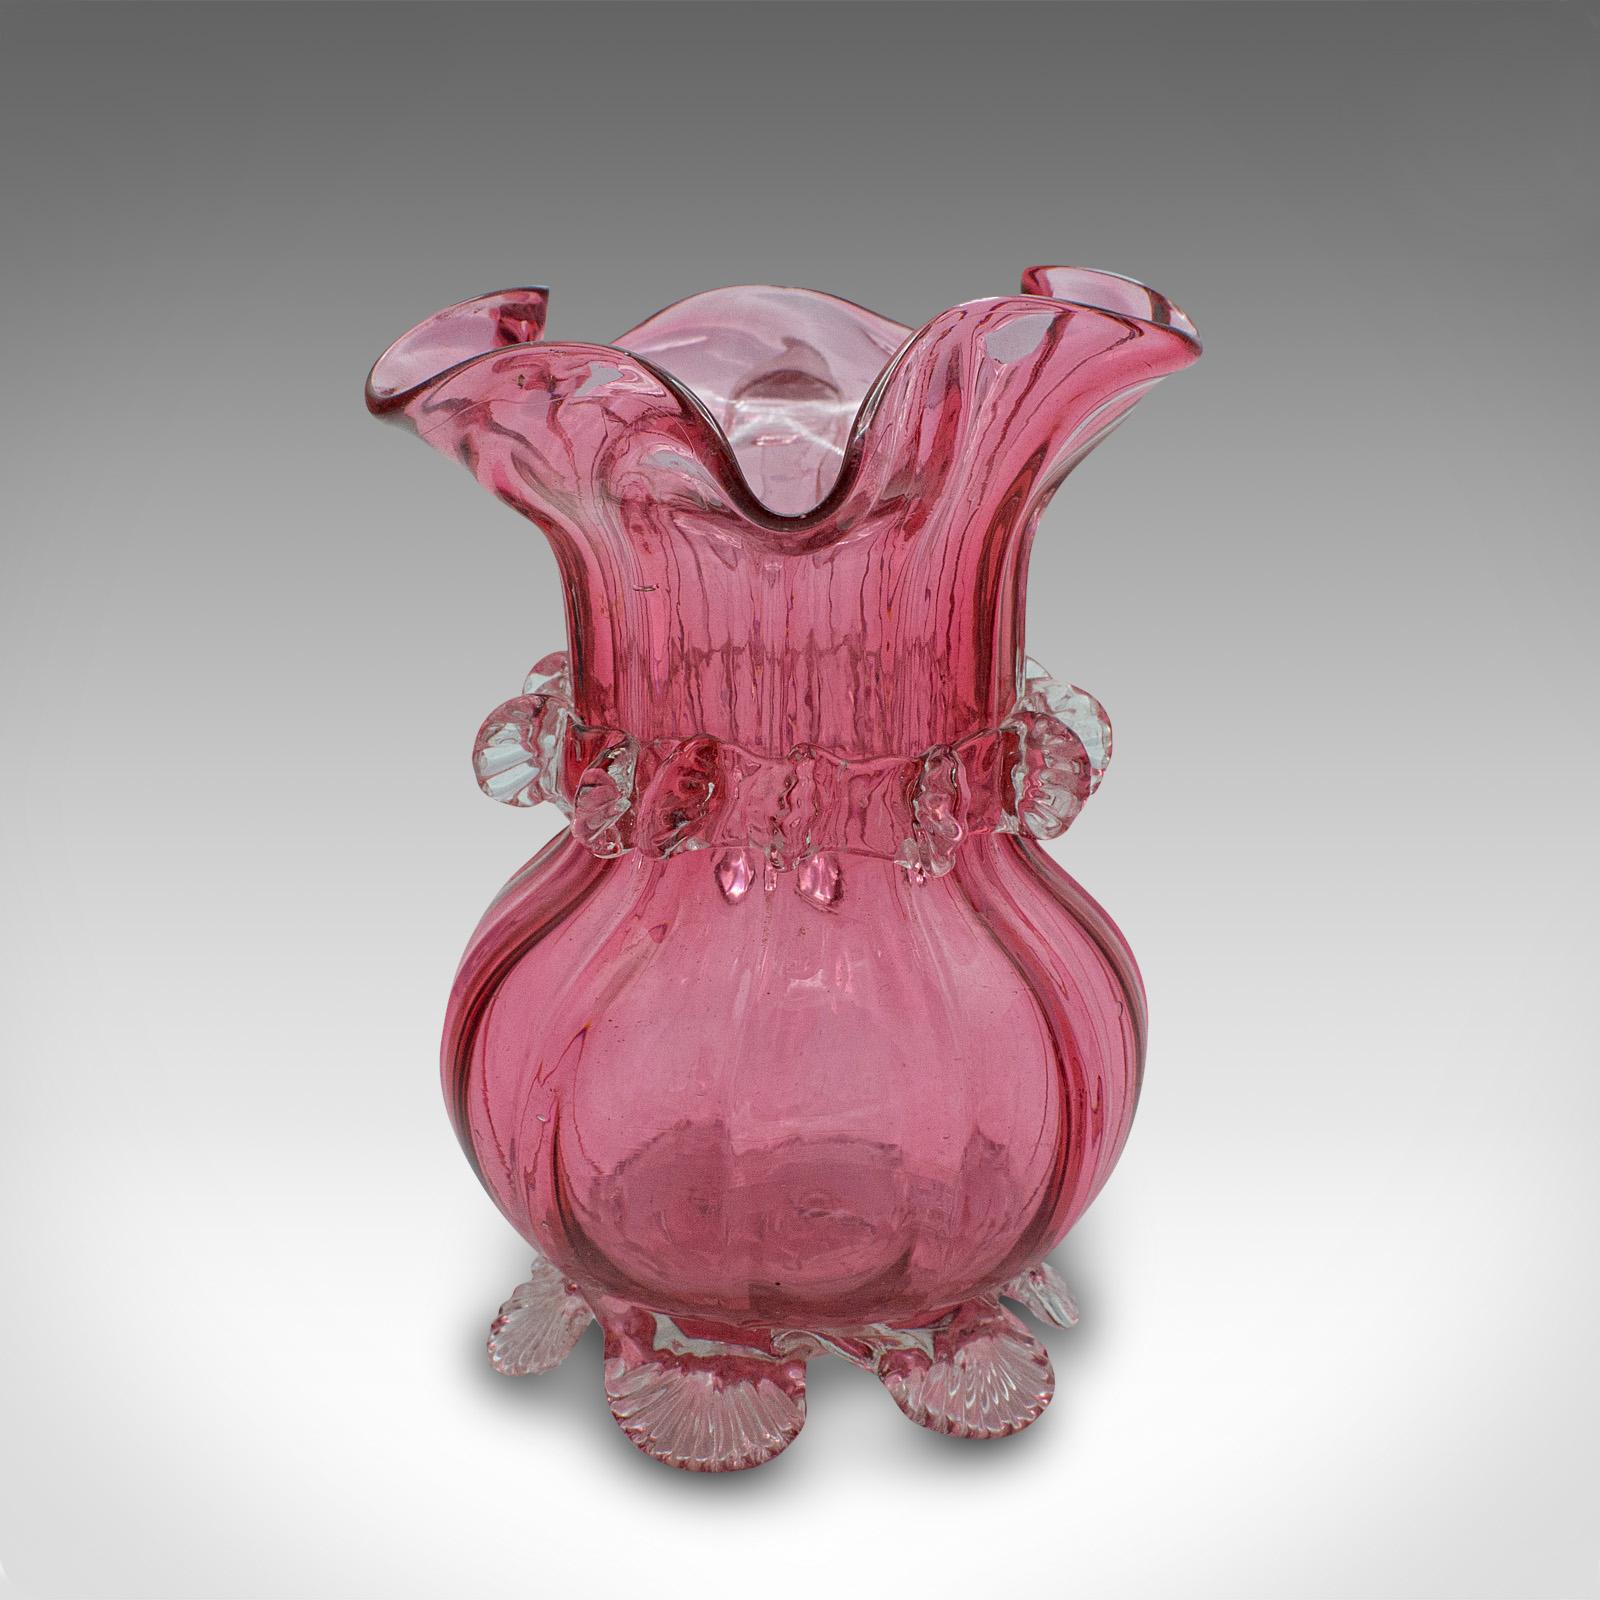 Vintage Cranberry Glass Stem Vase Set, English, Decorative, Flower Slip, Jug For Sale 1